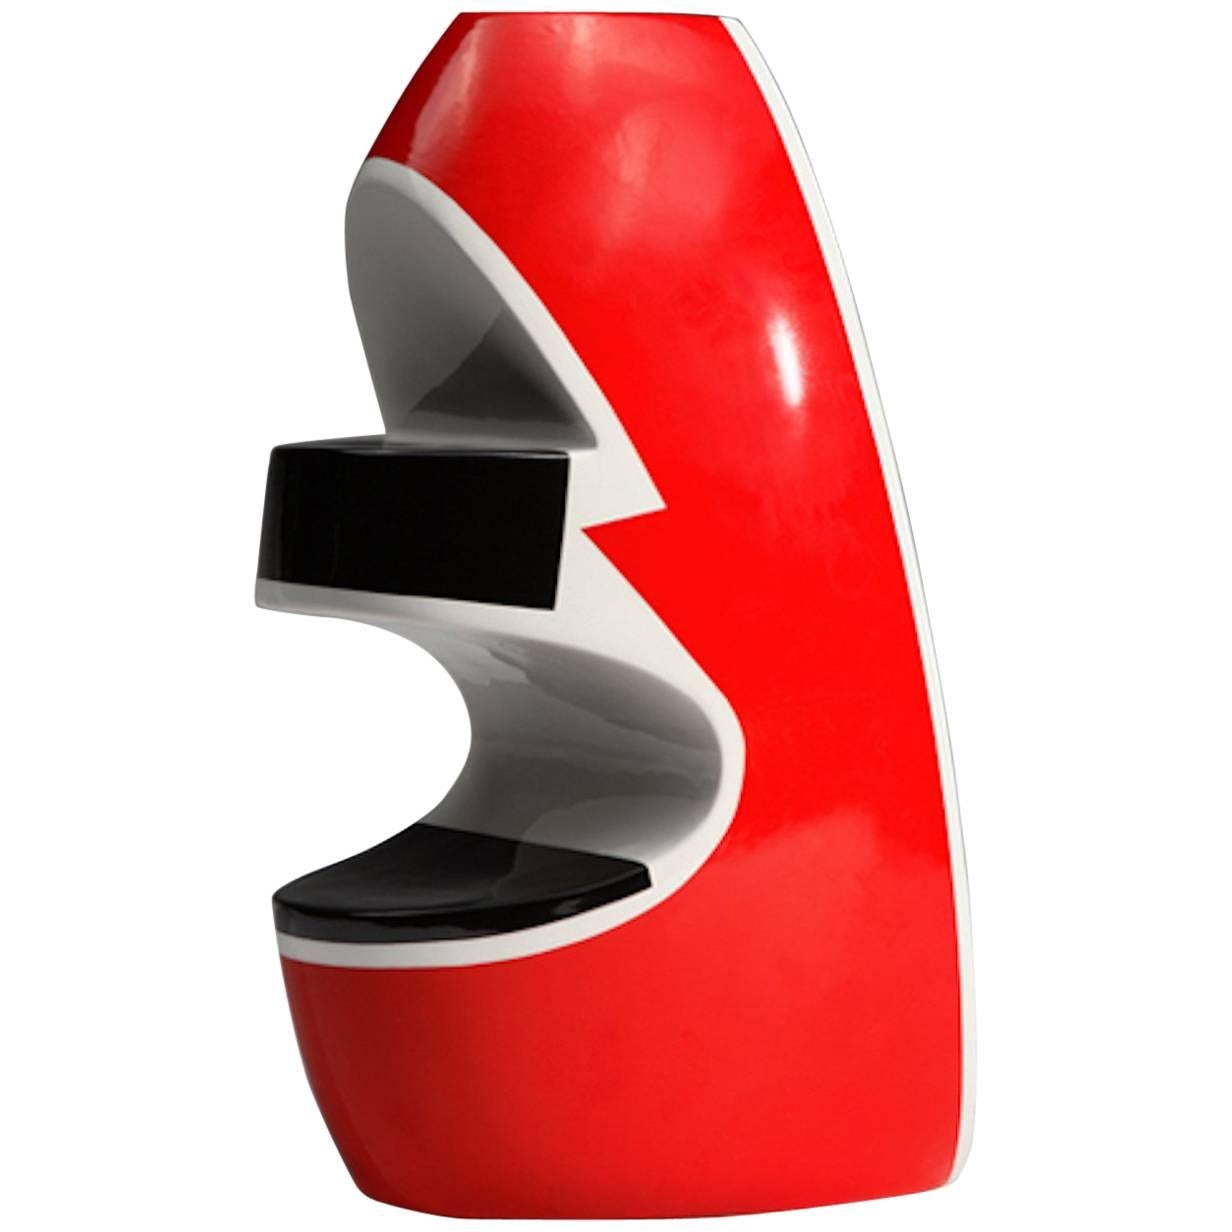 Vase en céramique italienne rouge de George Sowden pour les éditions Superego.